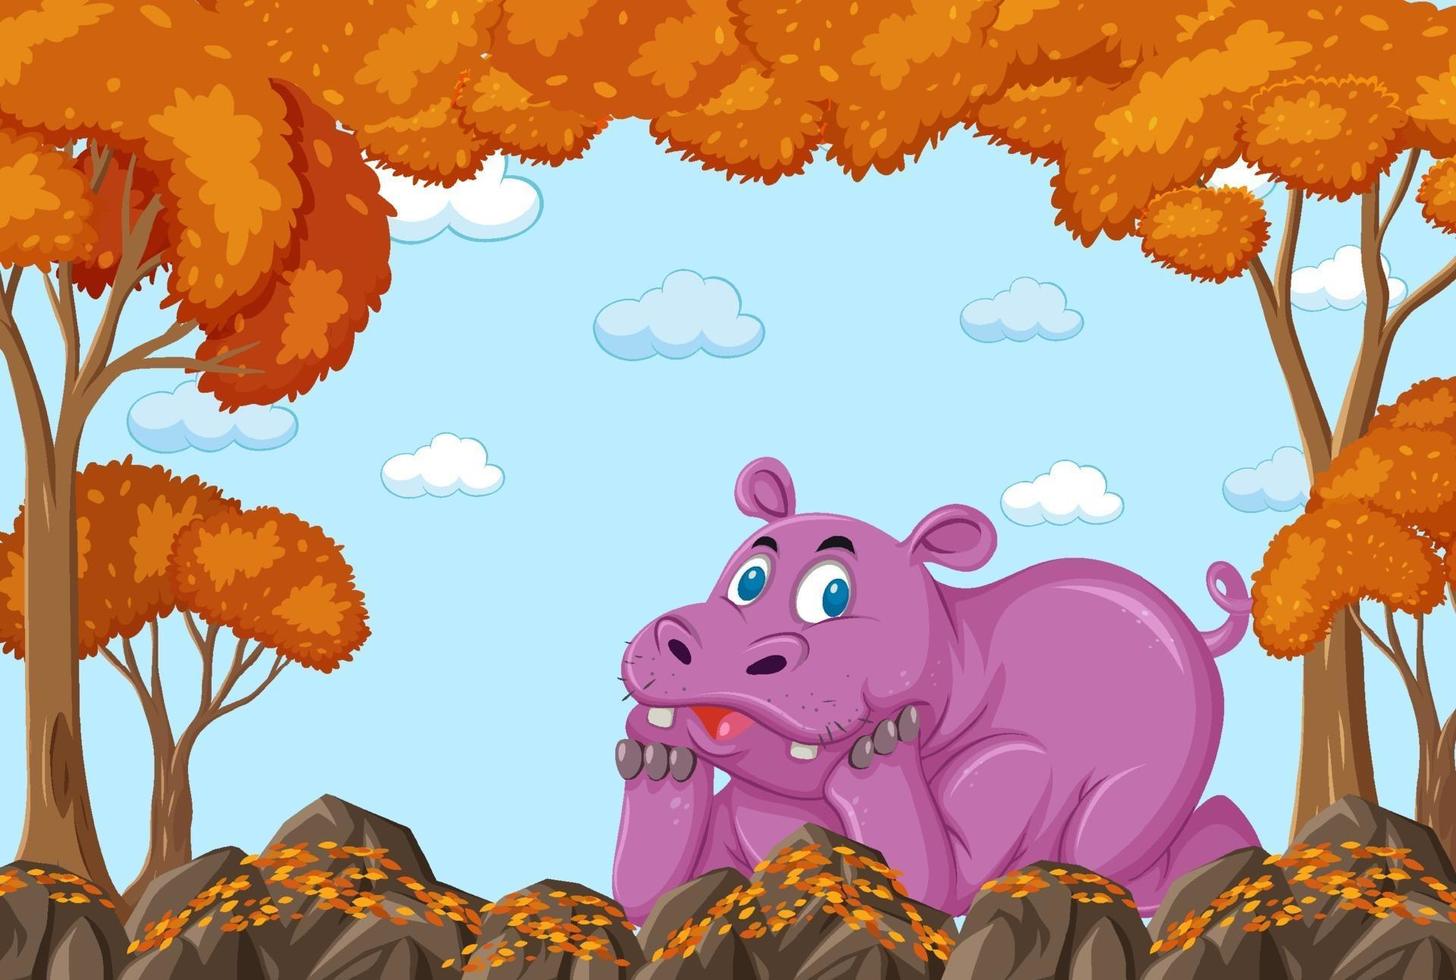 personnage de dessin animé hippopotame dans une scène de forêt dautomne vierge vecteur